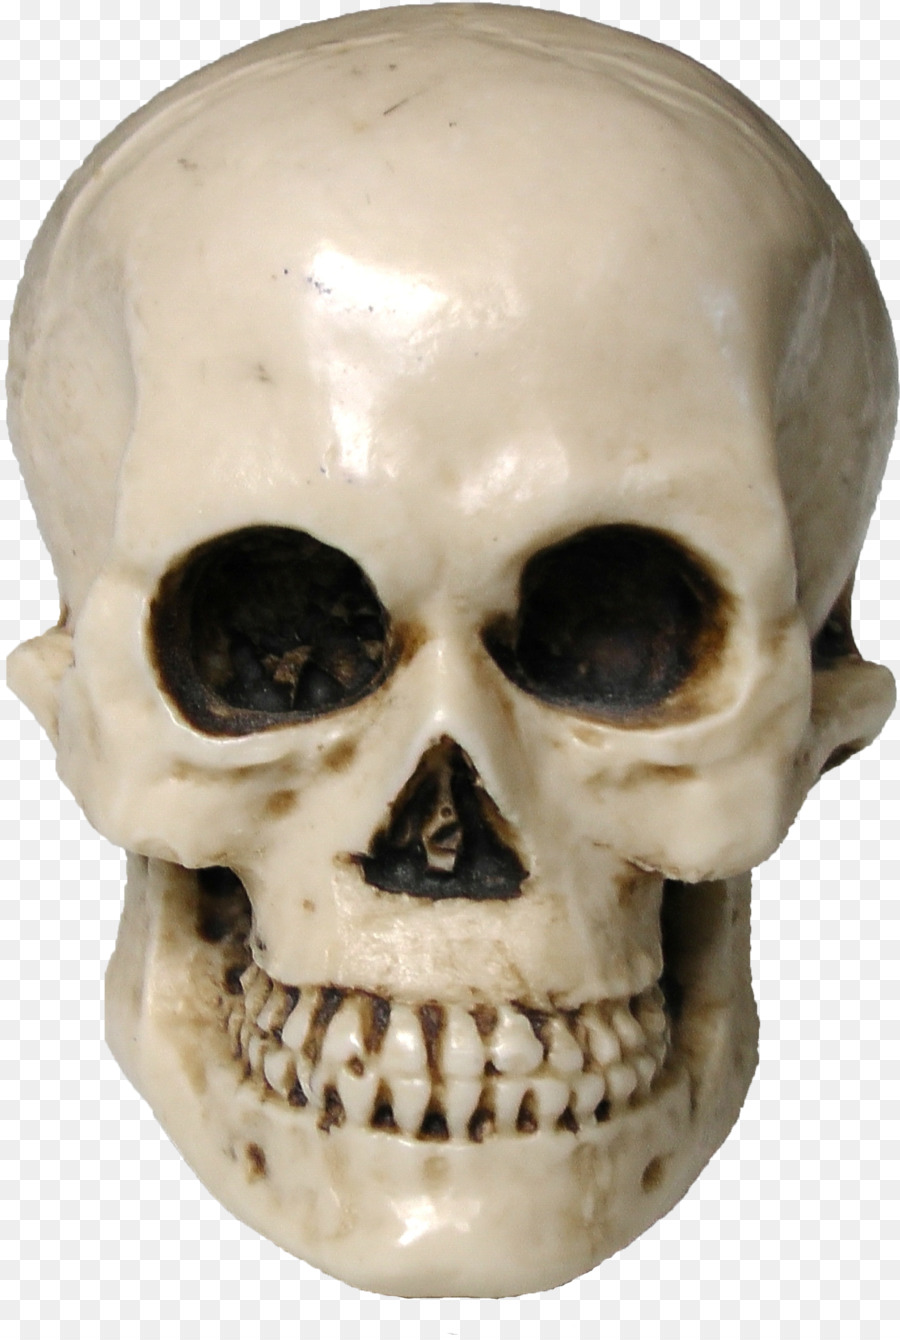 Skull Human skeleton Drawing - skull png download - 1500*2225 - Free Transparent Skull png Download.